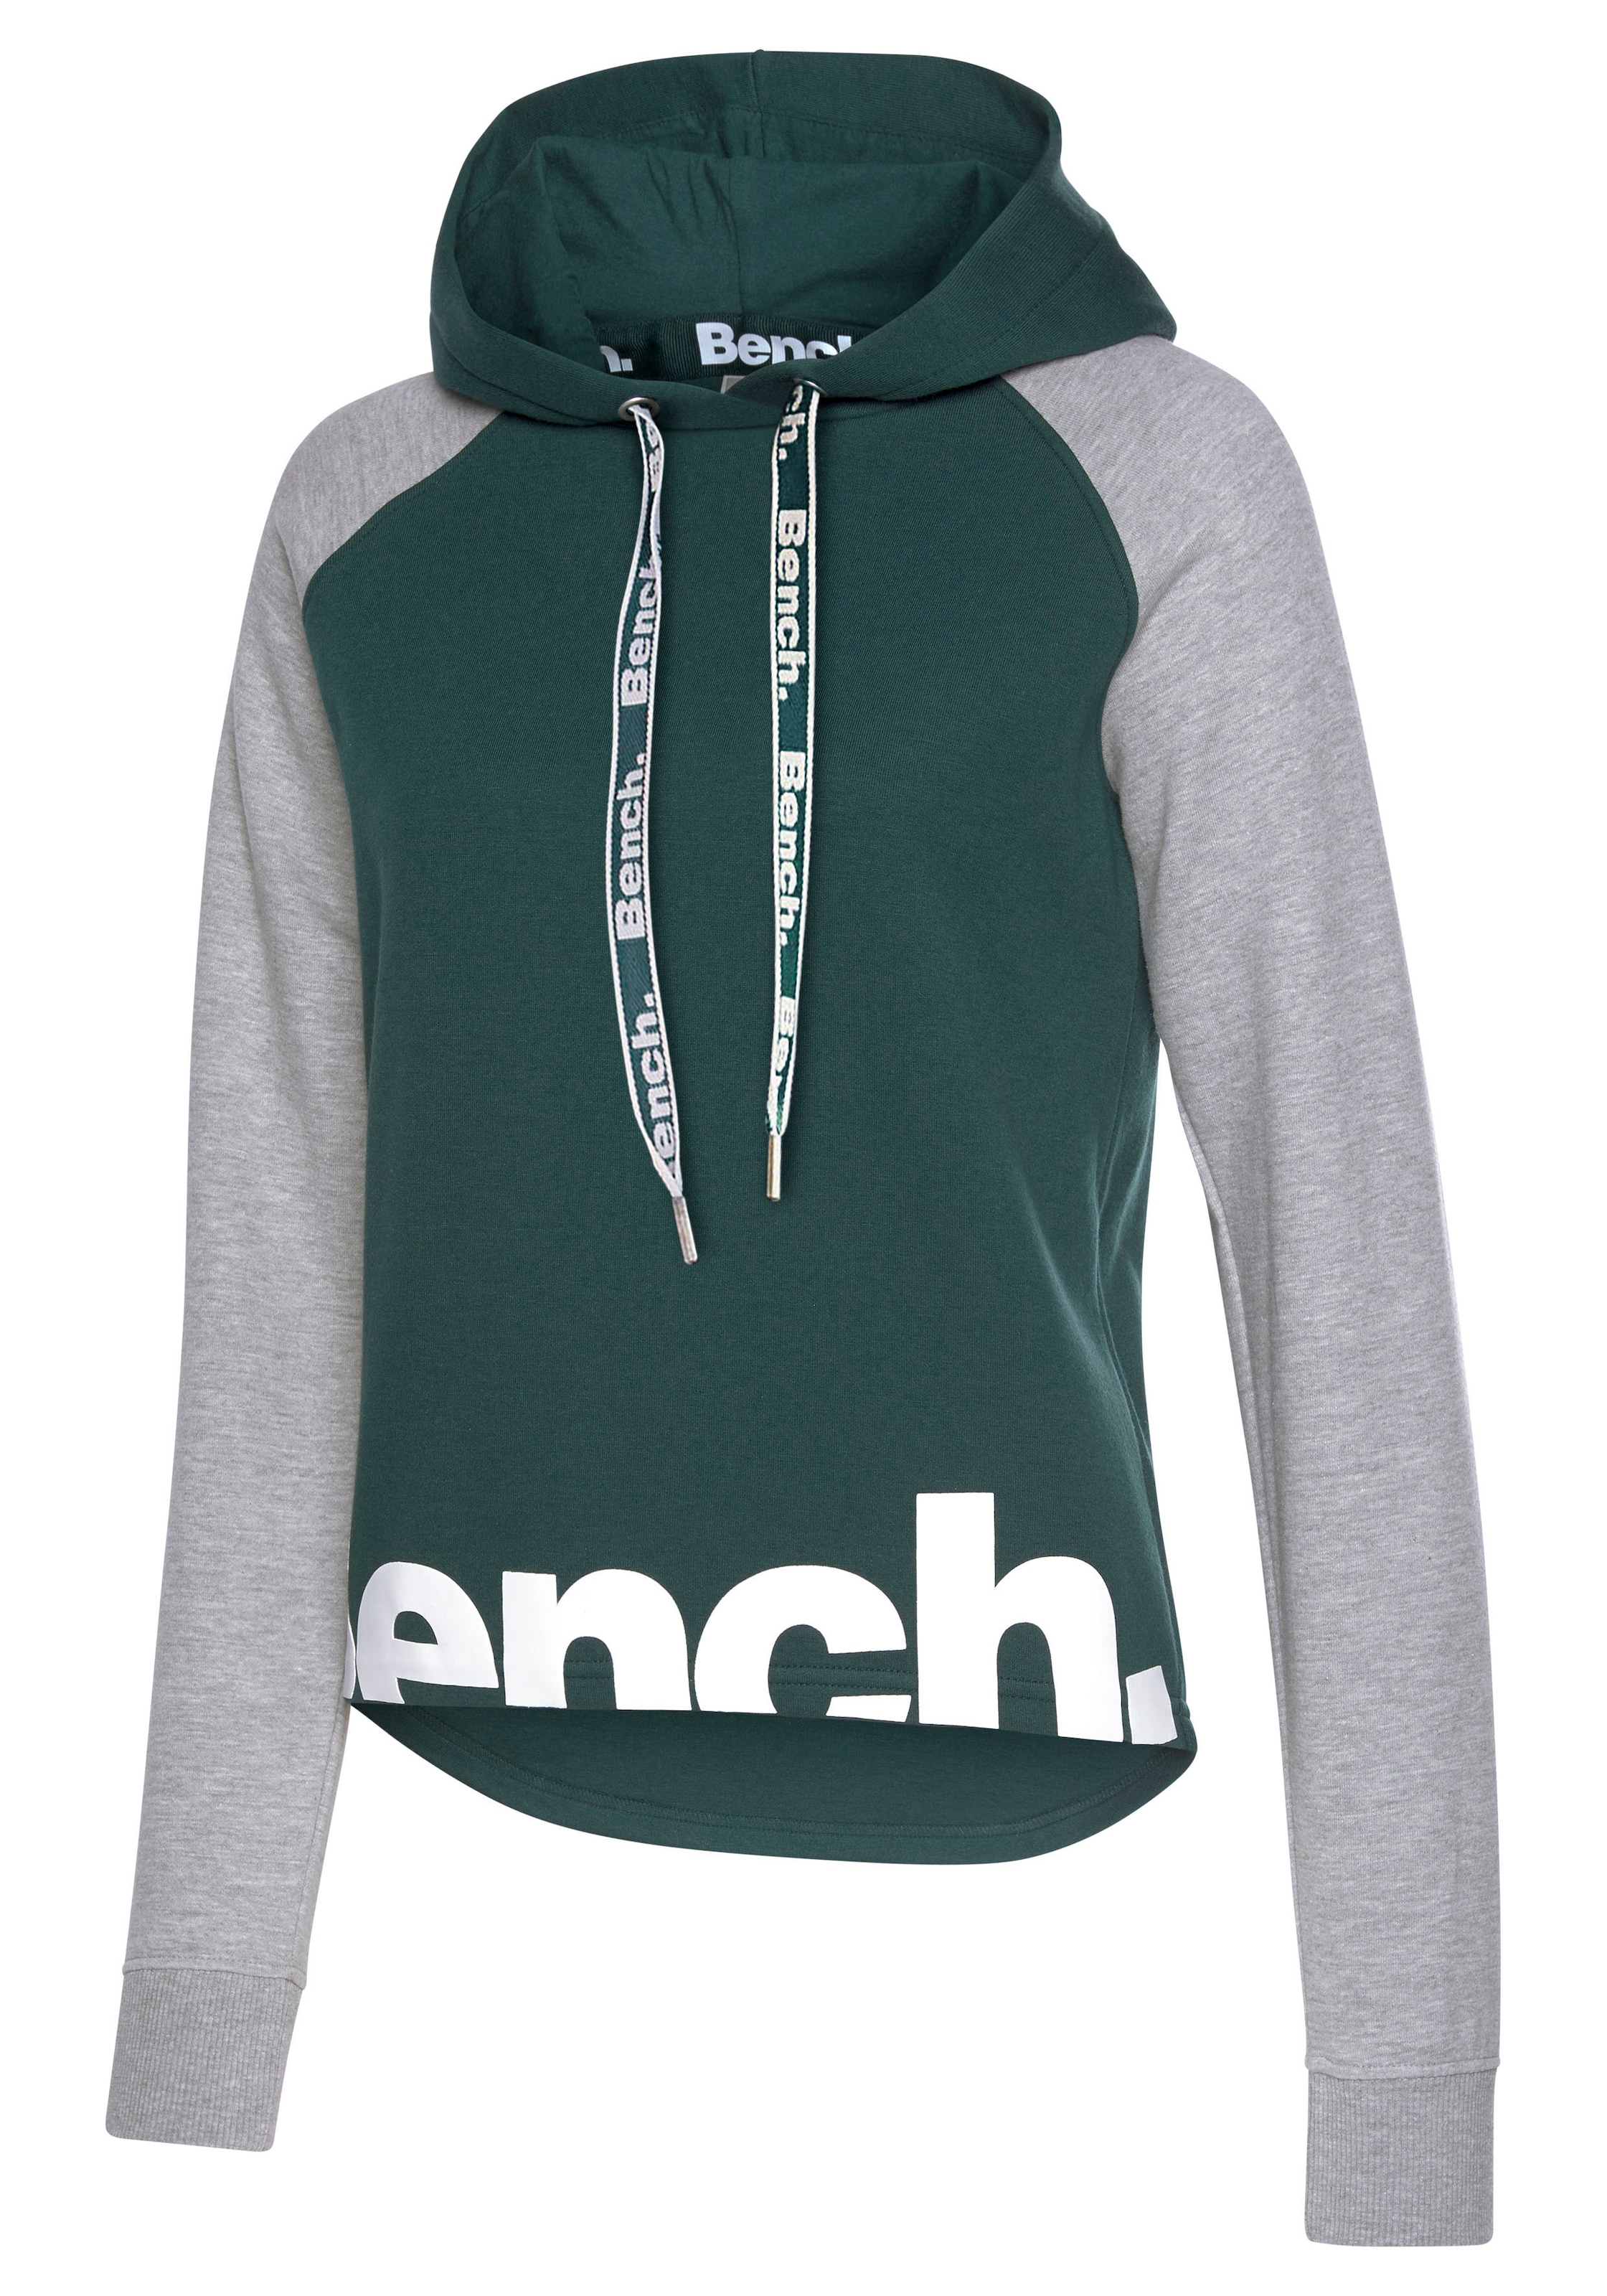 Bench. Loungewear Kapuzensweatshirt, farblich abgesetzten kaufen Online Loungeanzug, Ärmeln Shop OTTO mit im und Logodruck, Hoodie